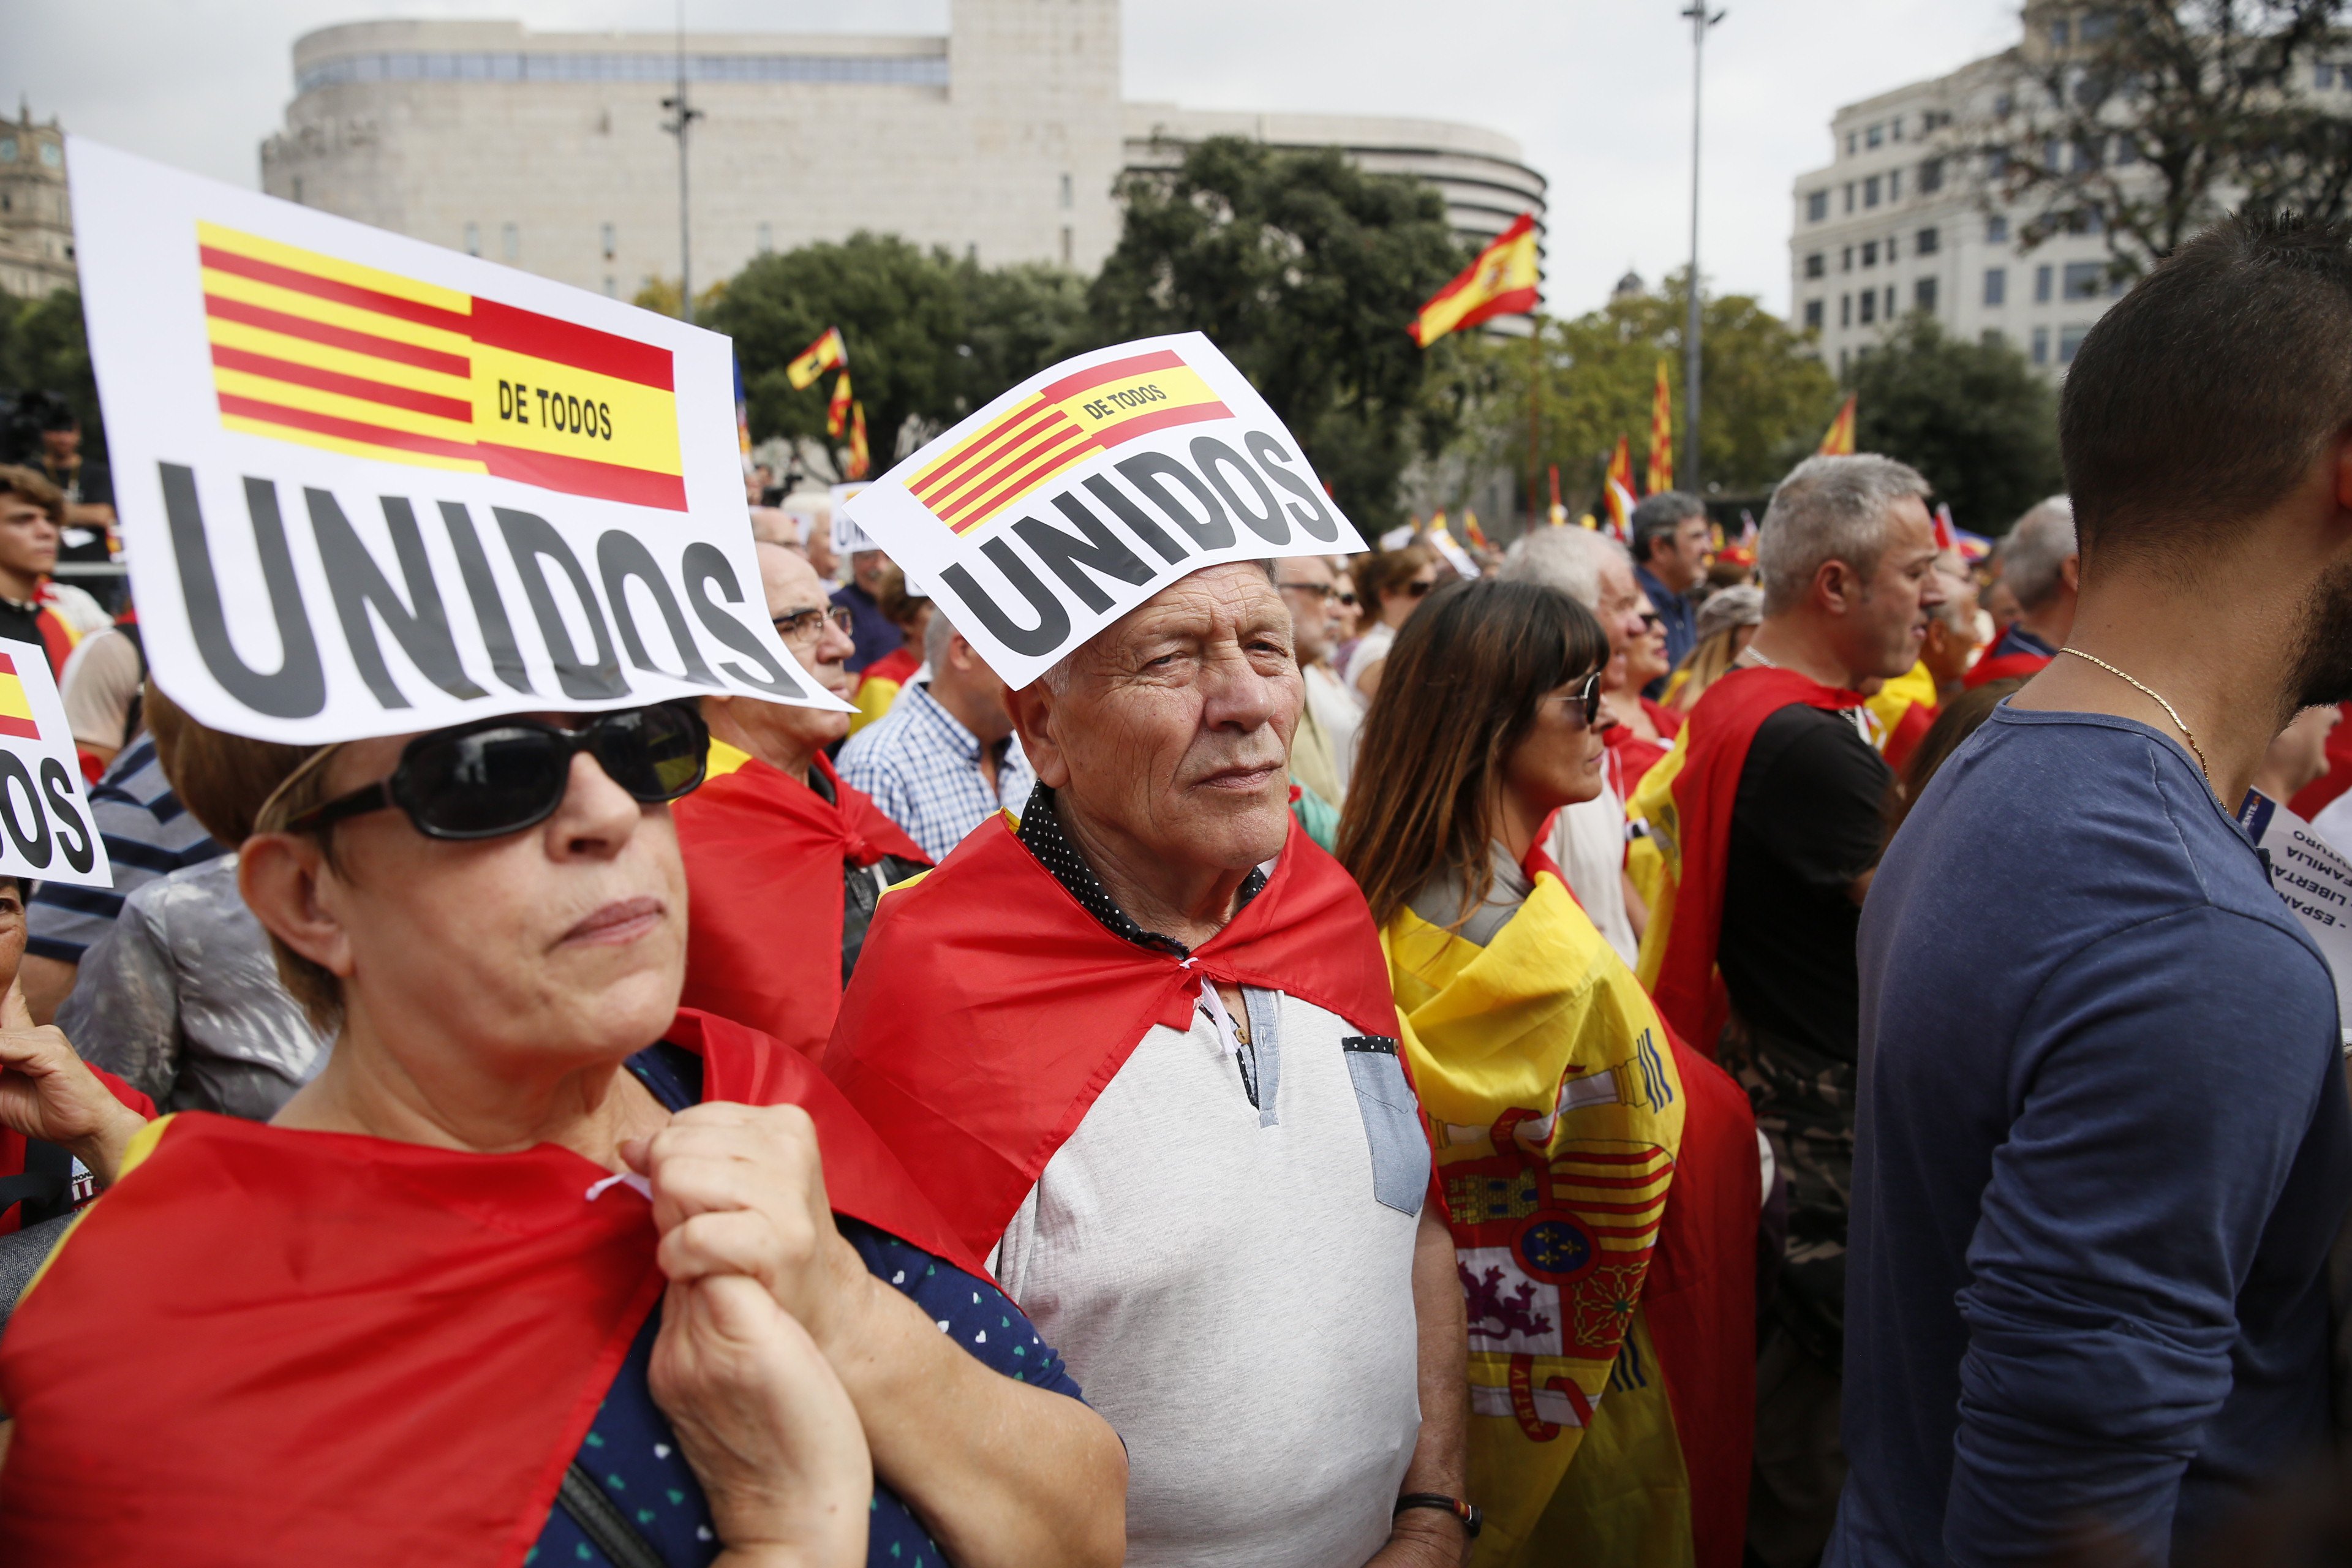 L’unionisme s’esmicola a Barcelona, amb 5 opcions i poques possibilitats d’acord